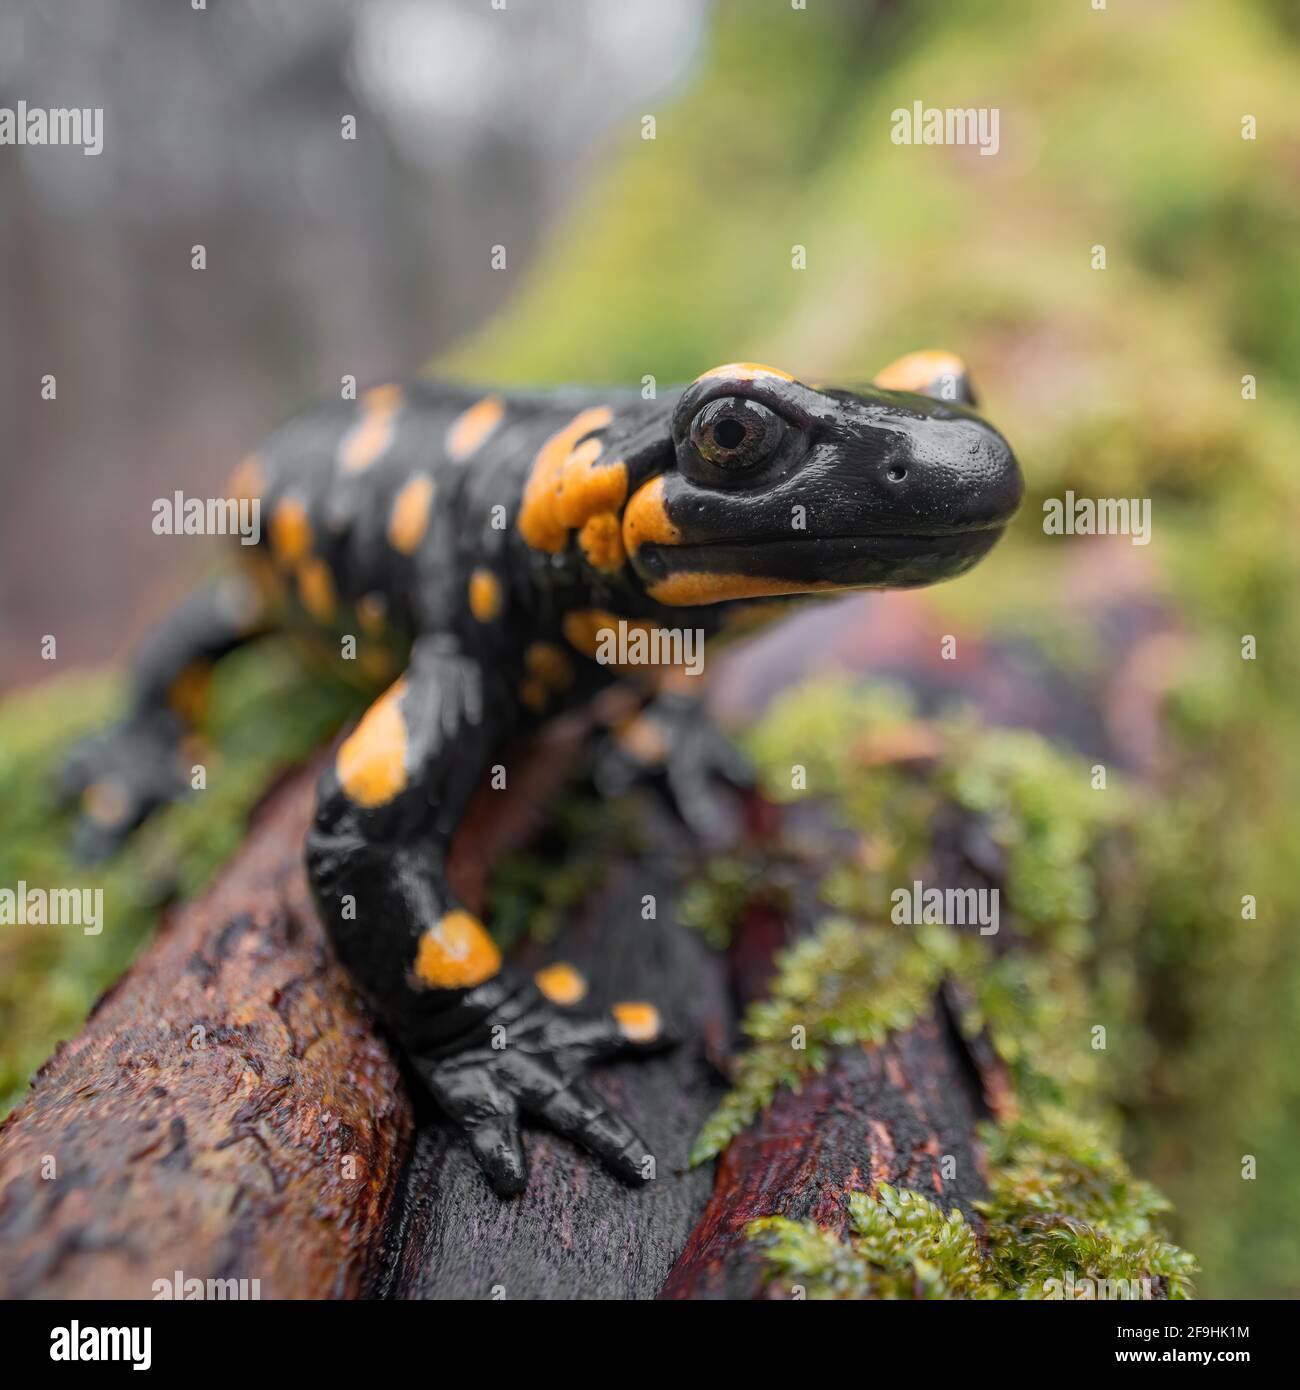 Nahaufnahme des Feuersalamanders (Salamandra salamandra), der auf einem feuchten, moosigen Baumzweig sitzt. Wald im Hintergrund. Geringe Tiefe von f Stockfoto